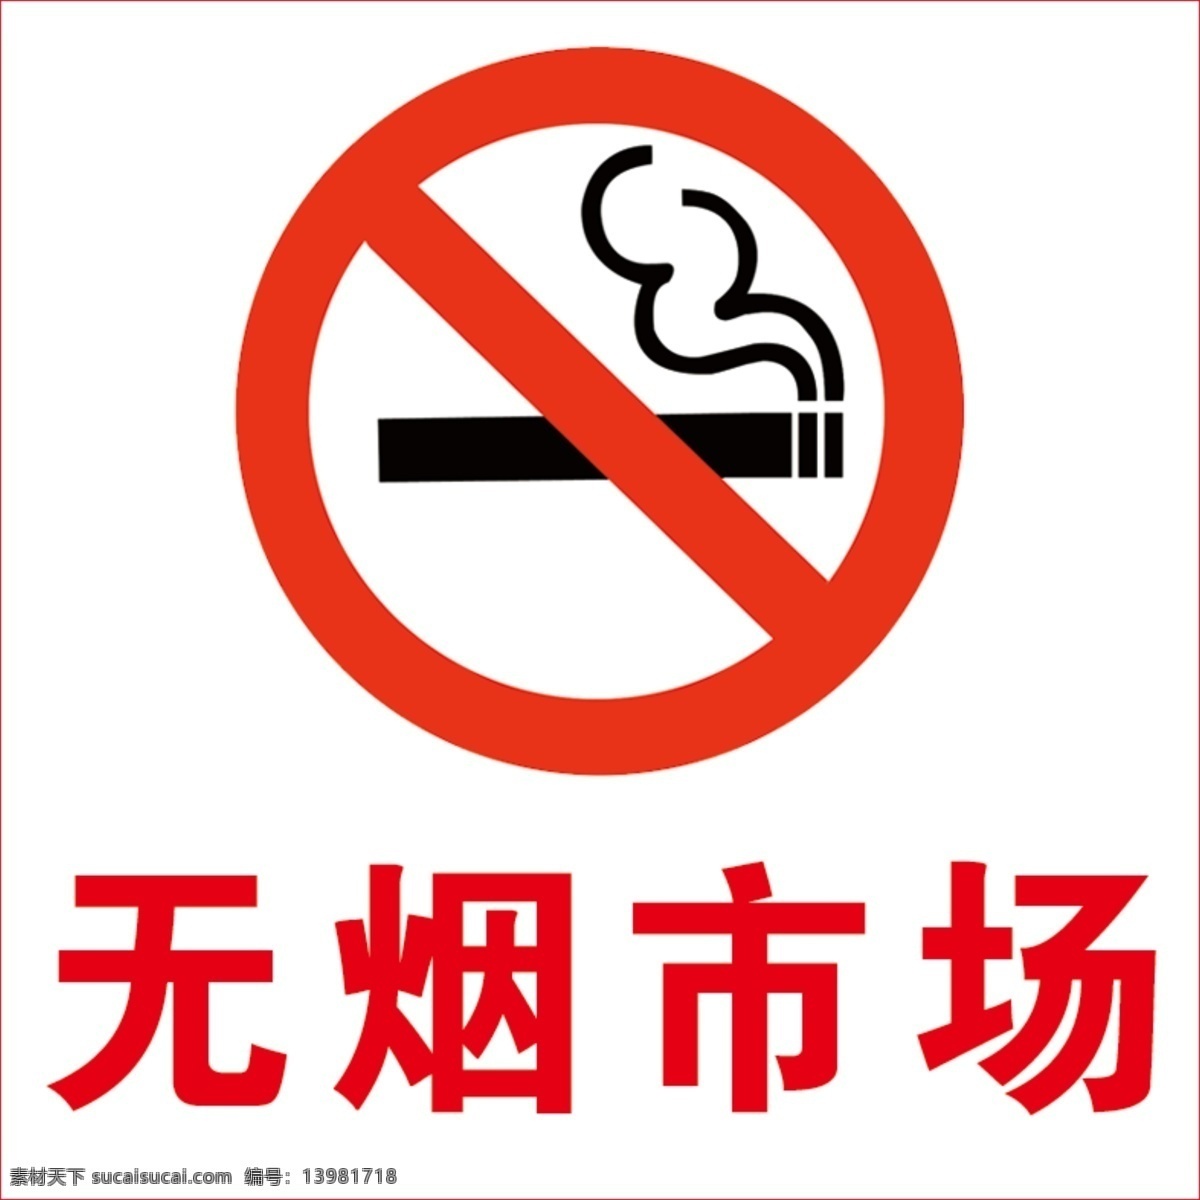 禁止吸烟标志 禁止吸烟 标志 无烟 无烟市场 生命要繼續 标志图标 公共标识标志